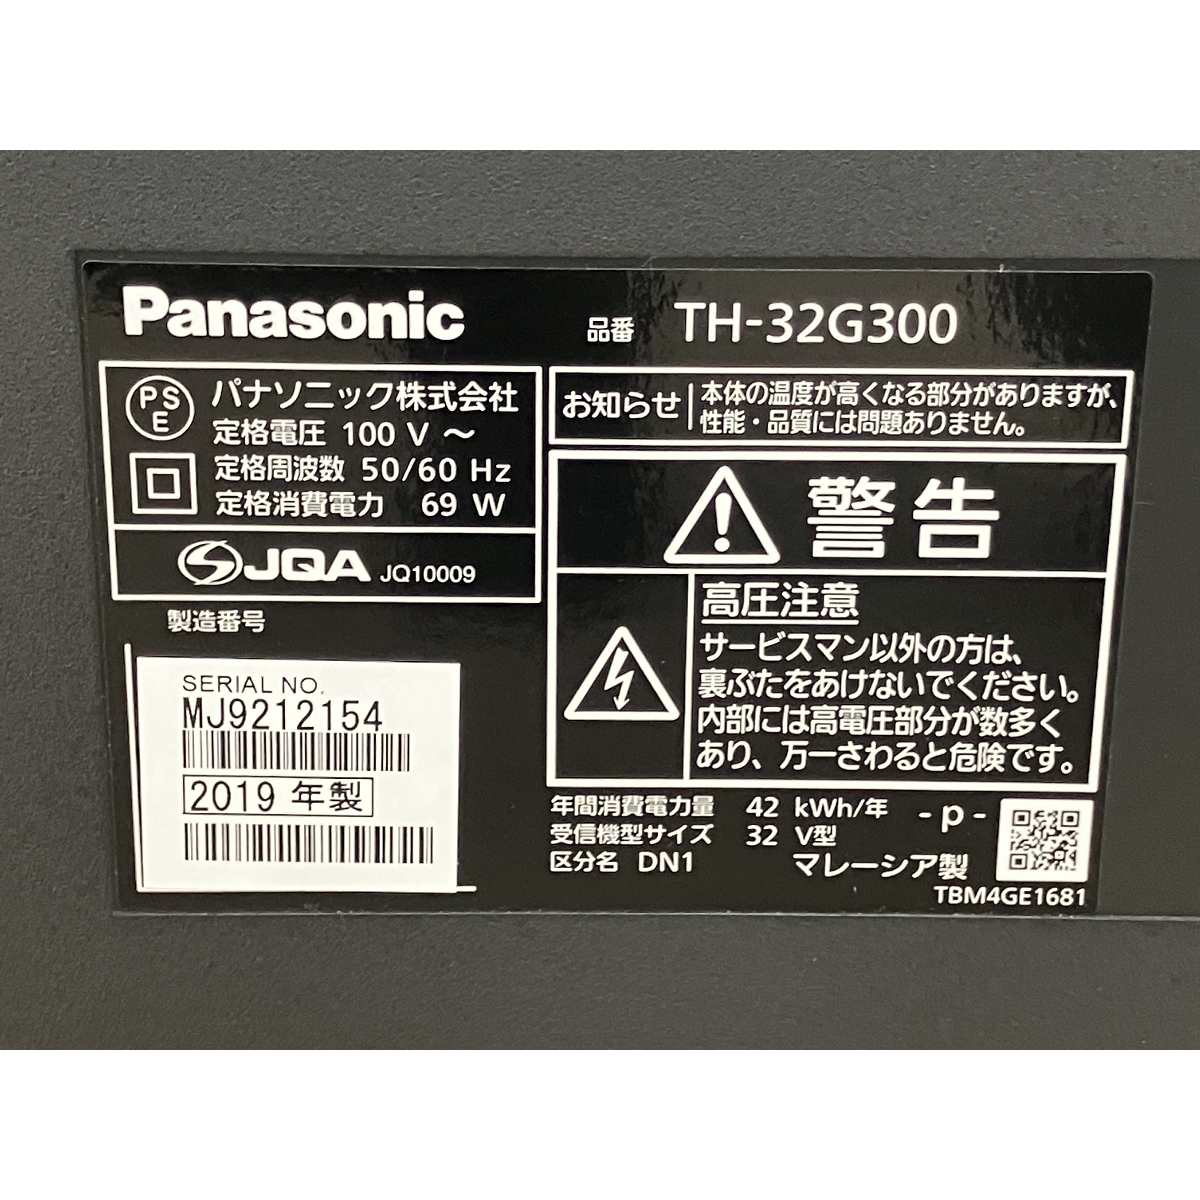 [ гарантия работы ]Panasonic TH-32G300 жидкокристаллический телевизор 32 type 2020 год производства Panasonic телевизор бытовая техника б/у приятный B8840241